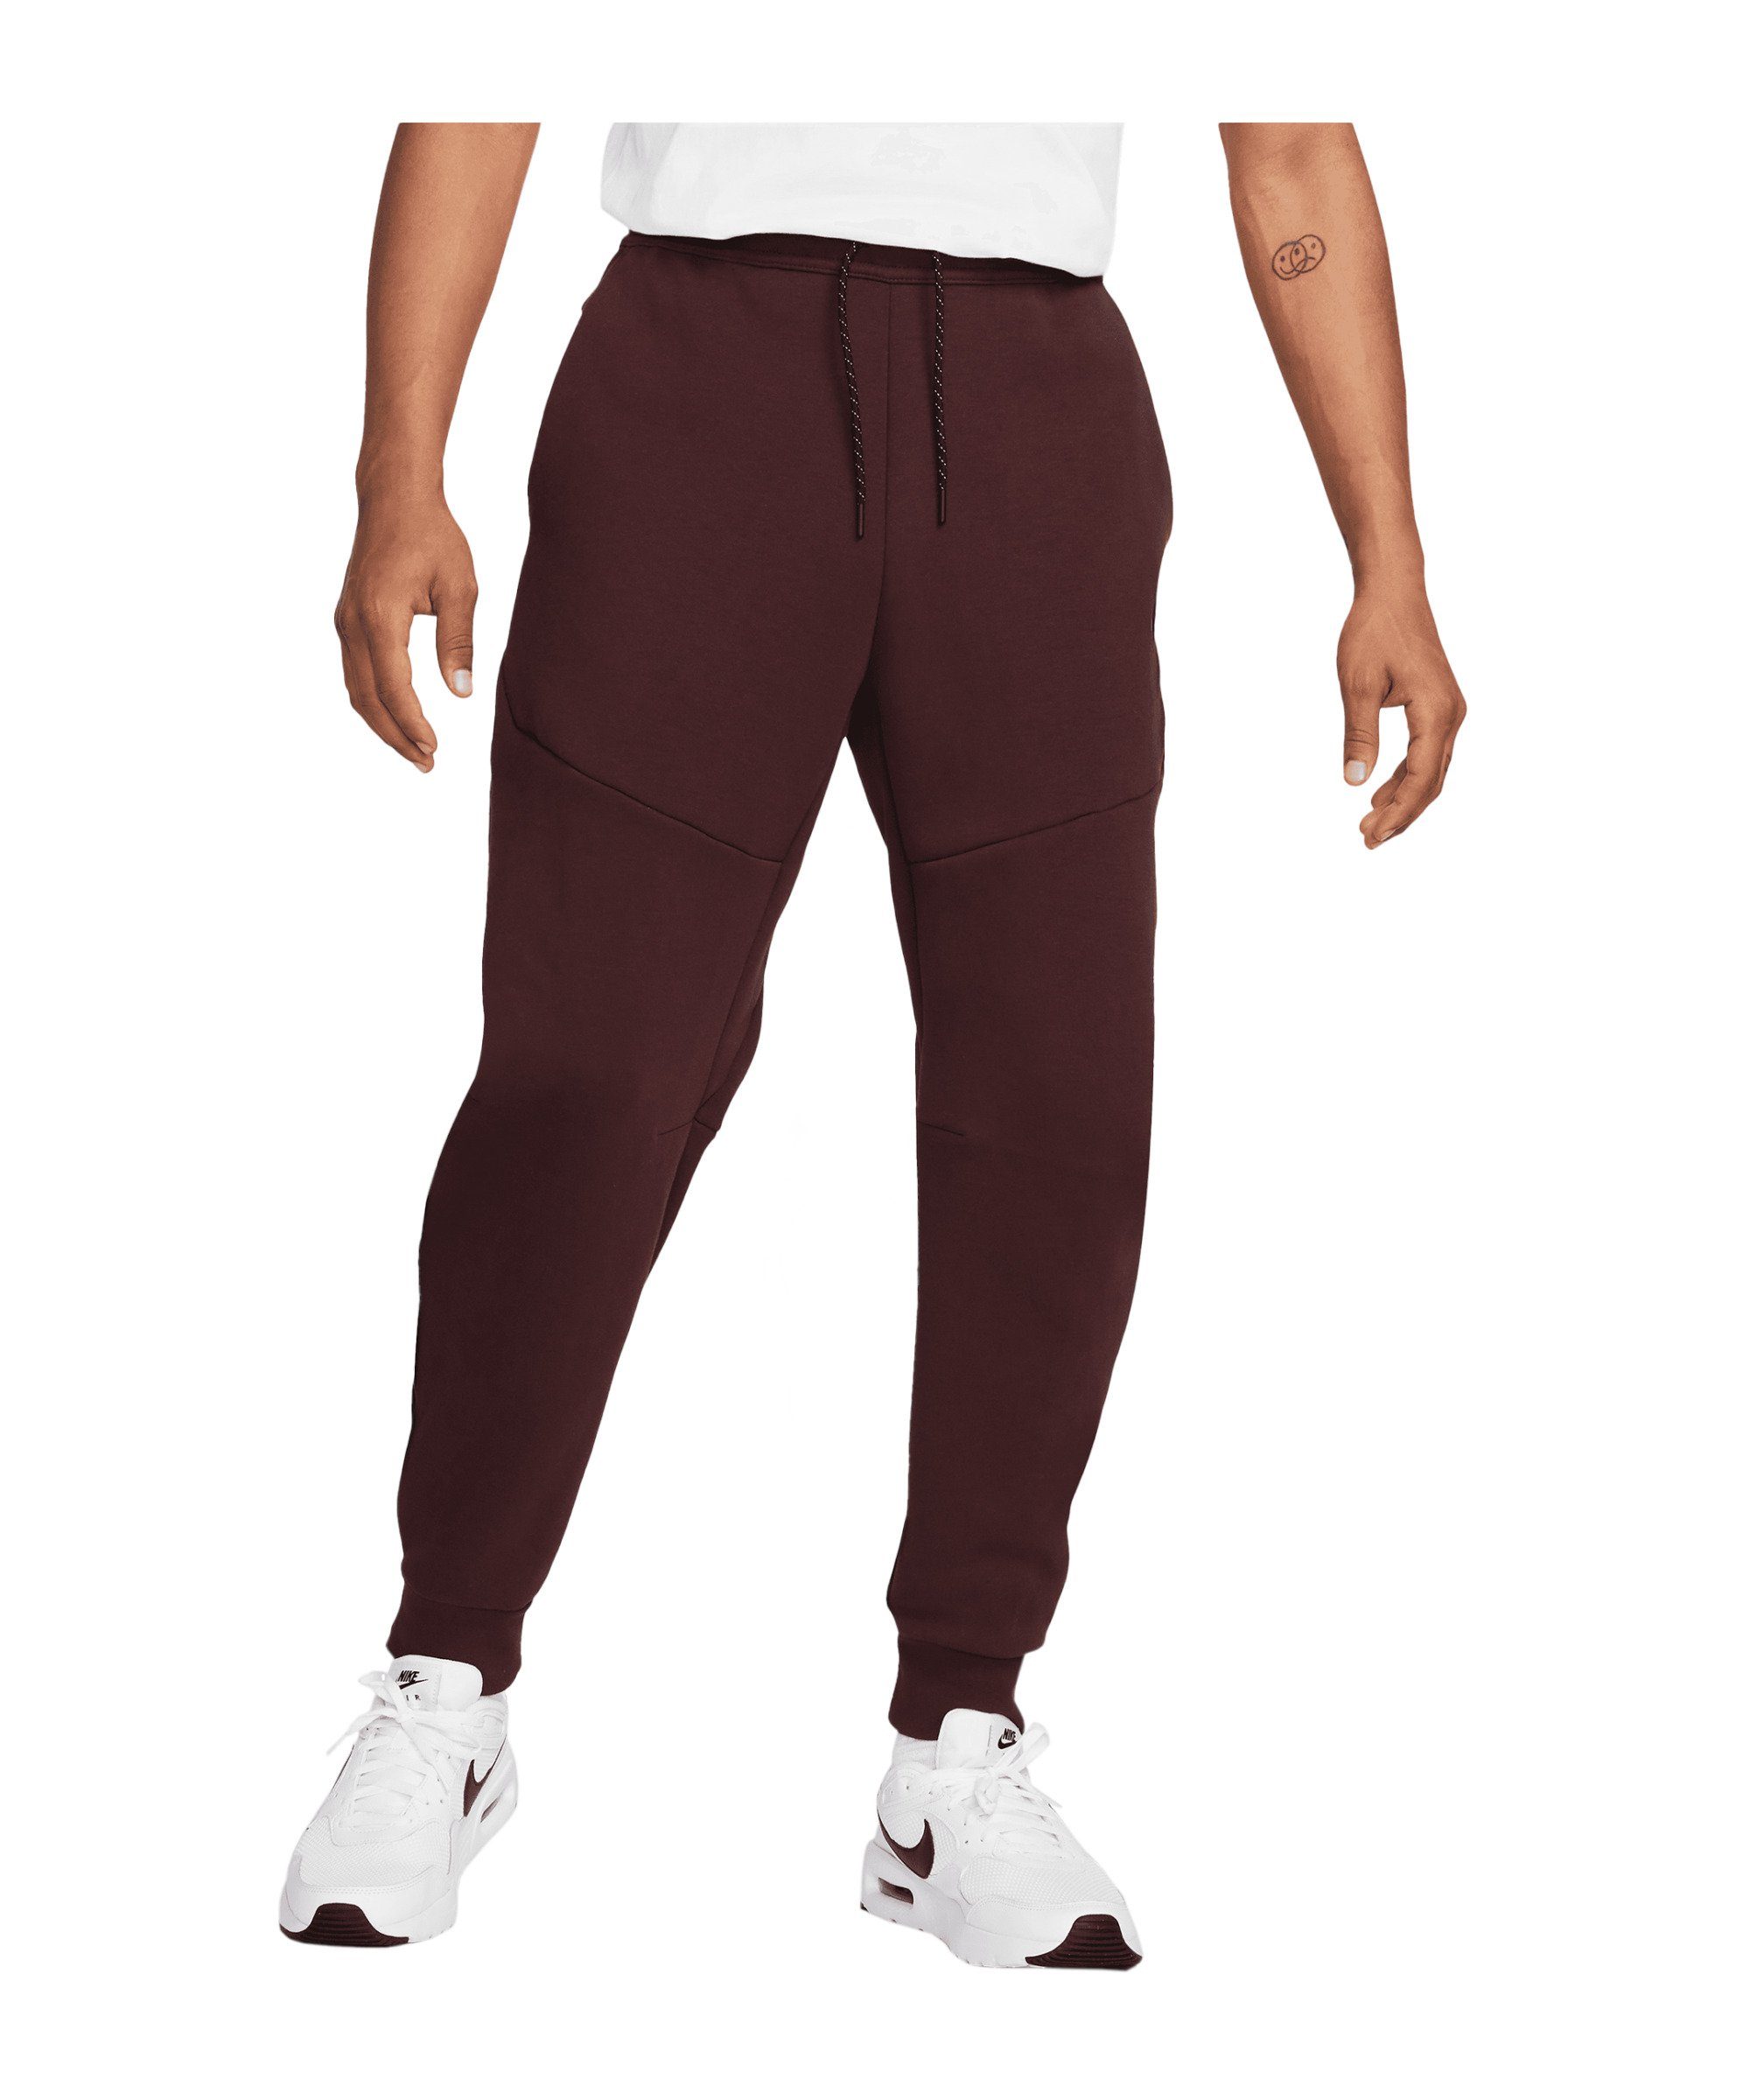 Nike Sportswear Jogginghose »Tech Fleece Jogginghose« online kaufen | OTTO